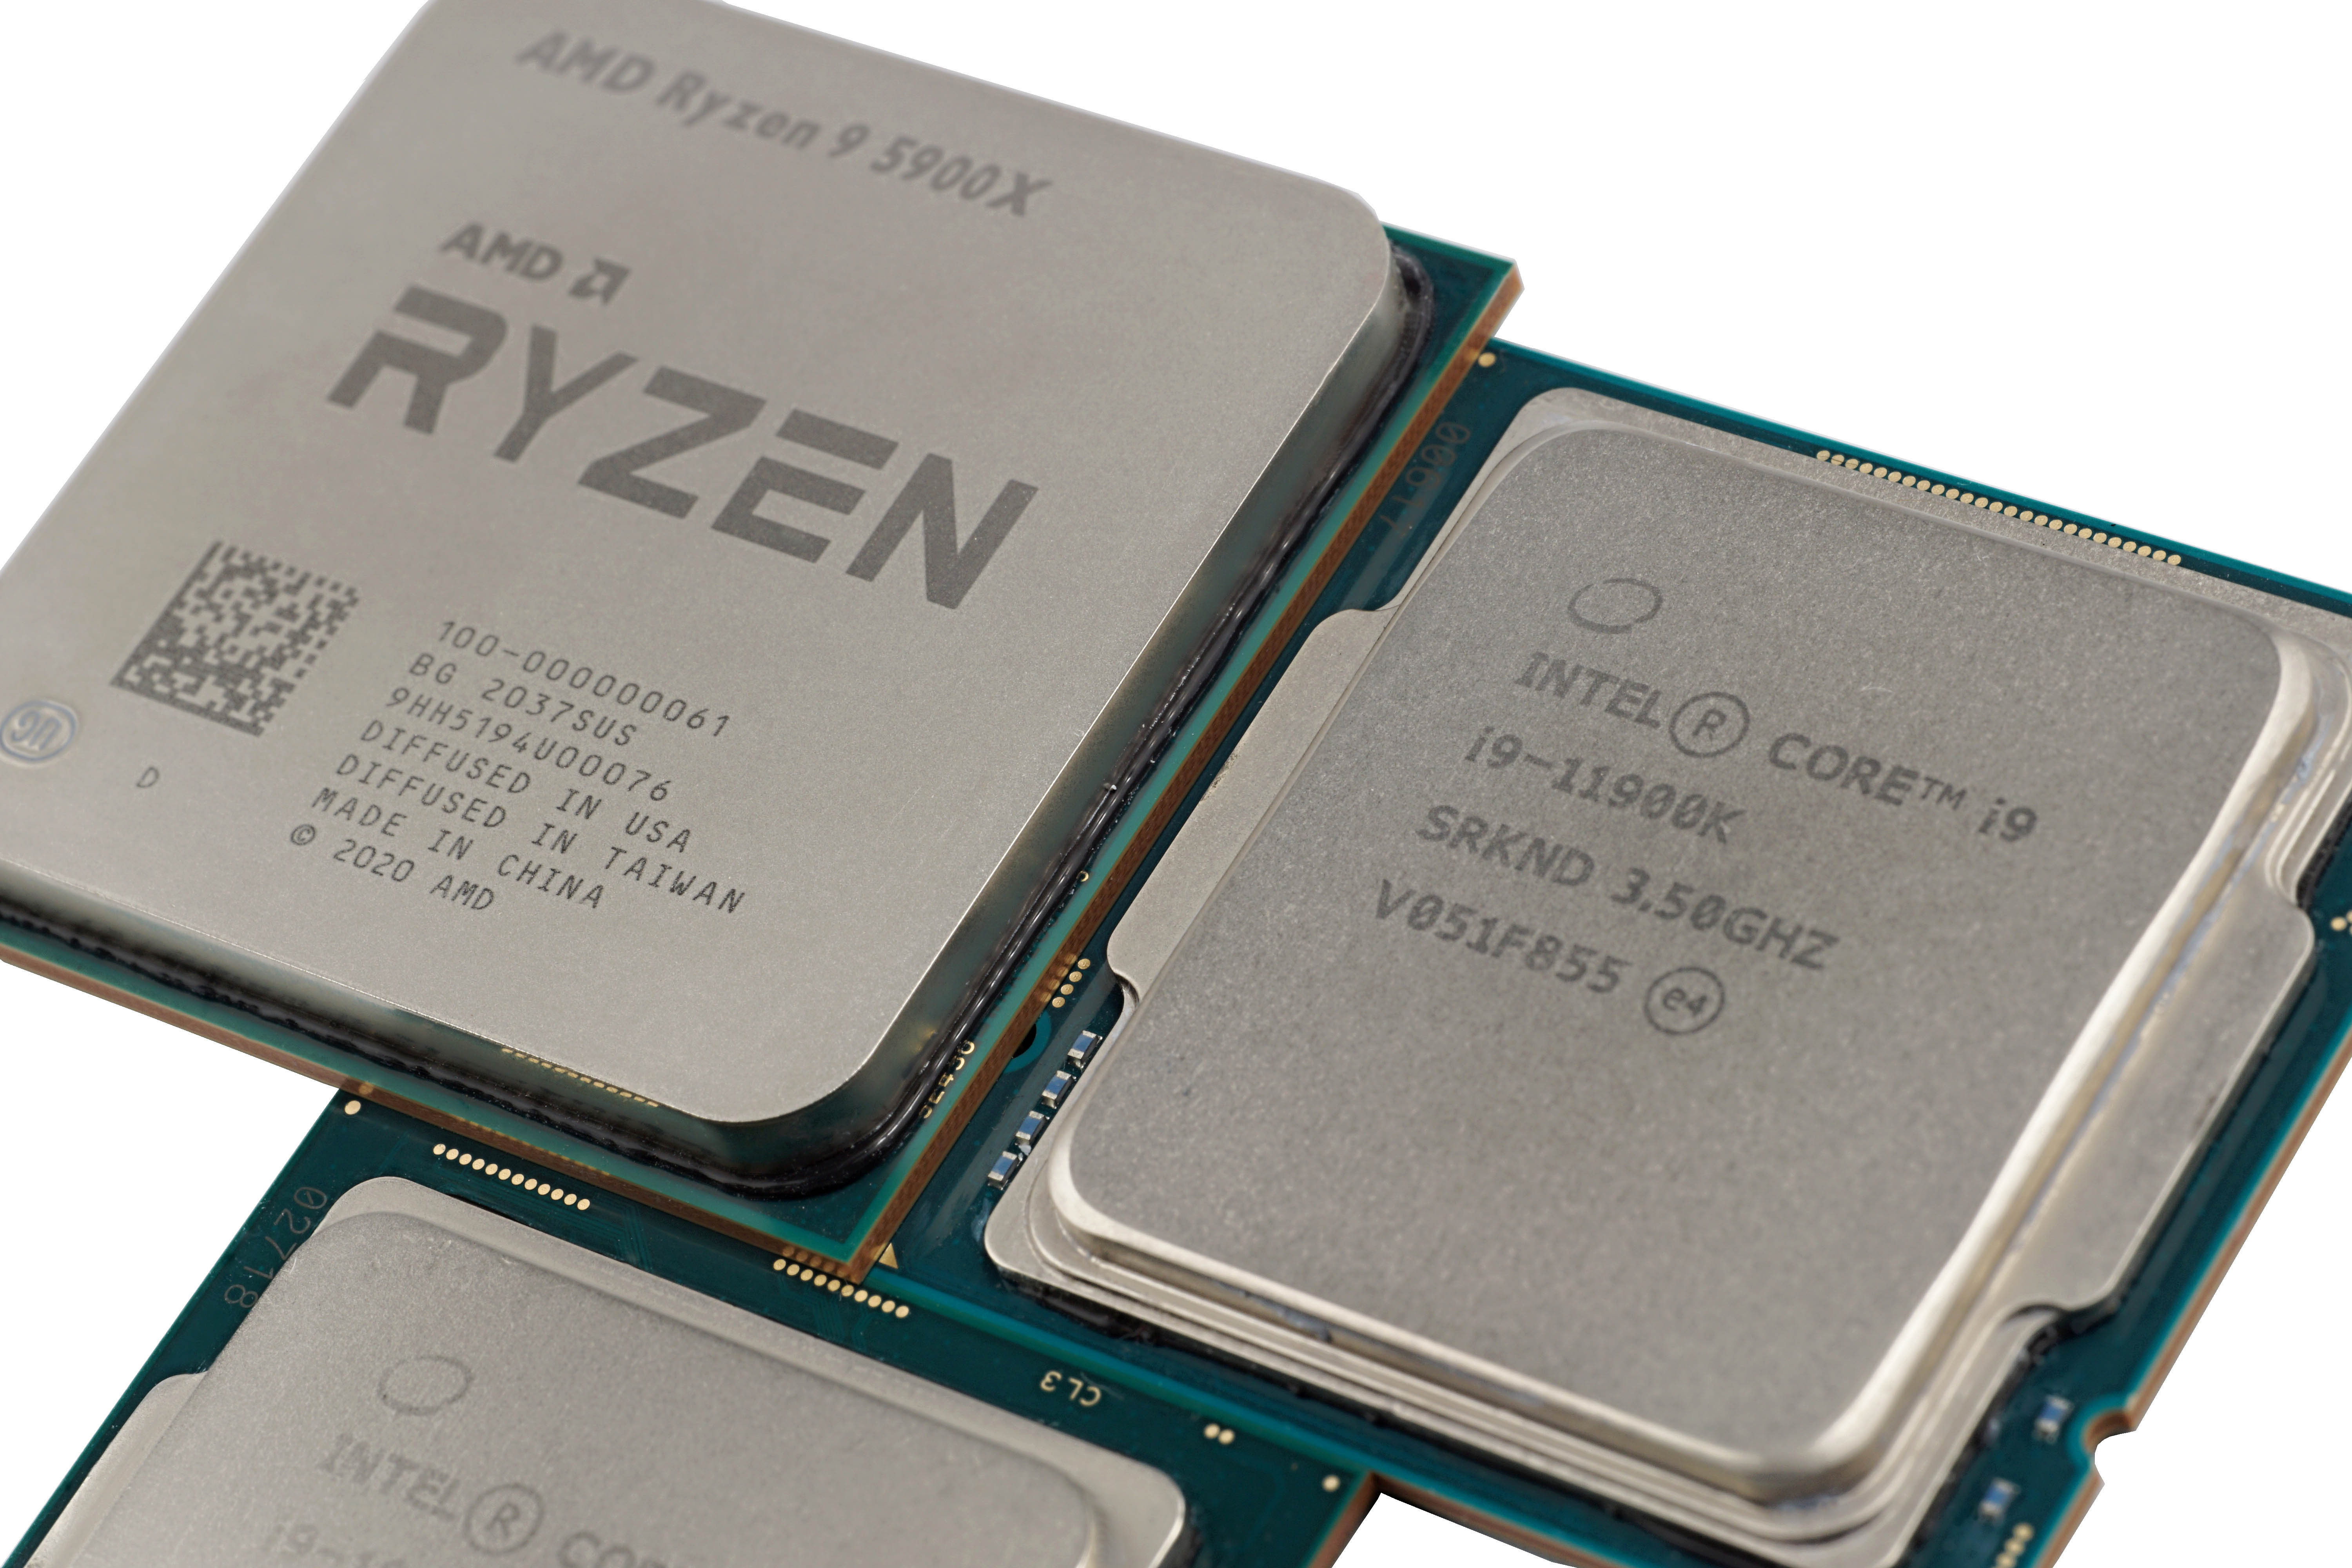 Intel Core i9-11900K vs. AMD Ryzen 9 5900X. Who's the winner? 